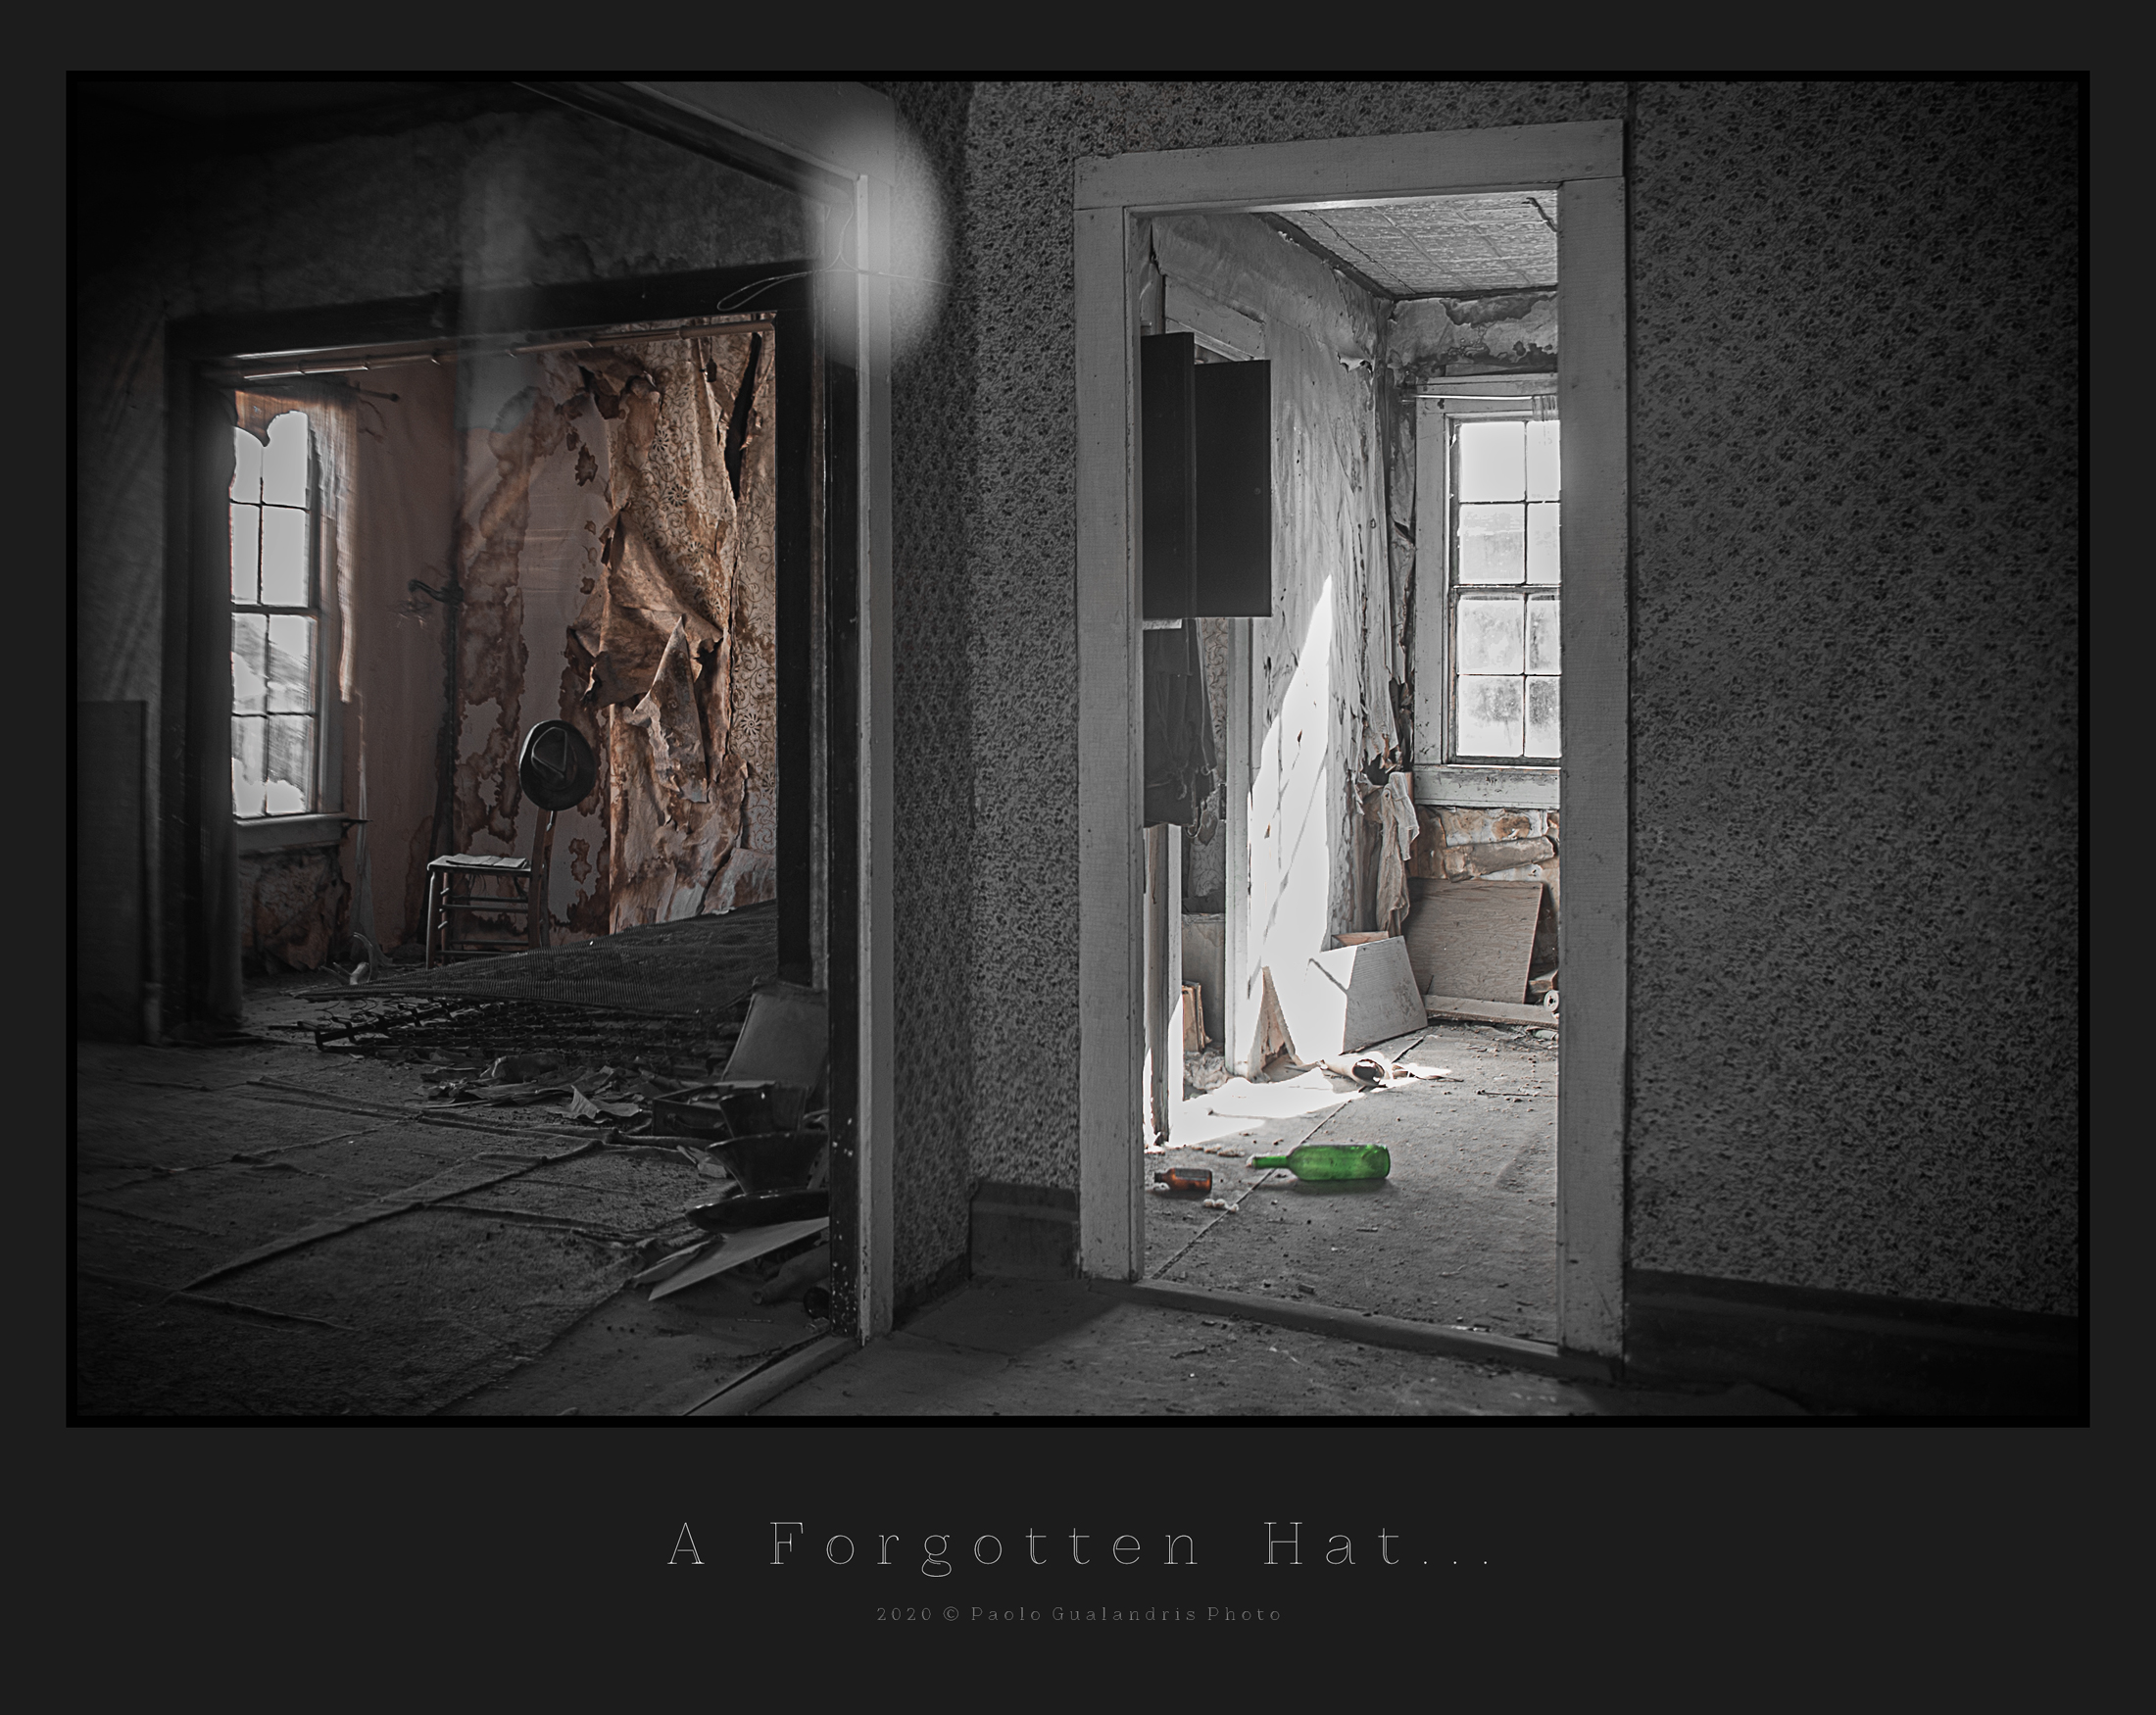 A Forgotten Hat......